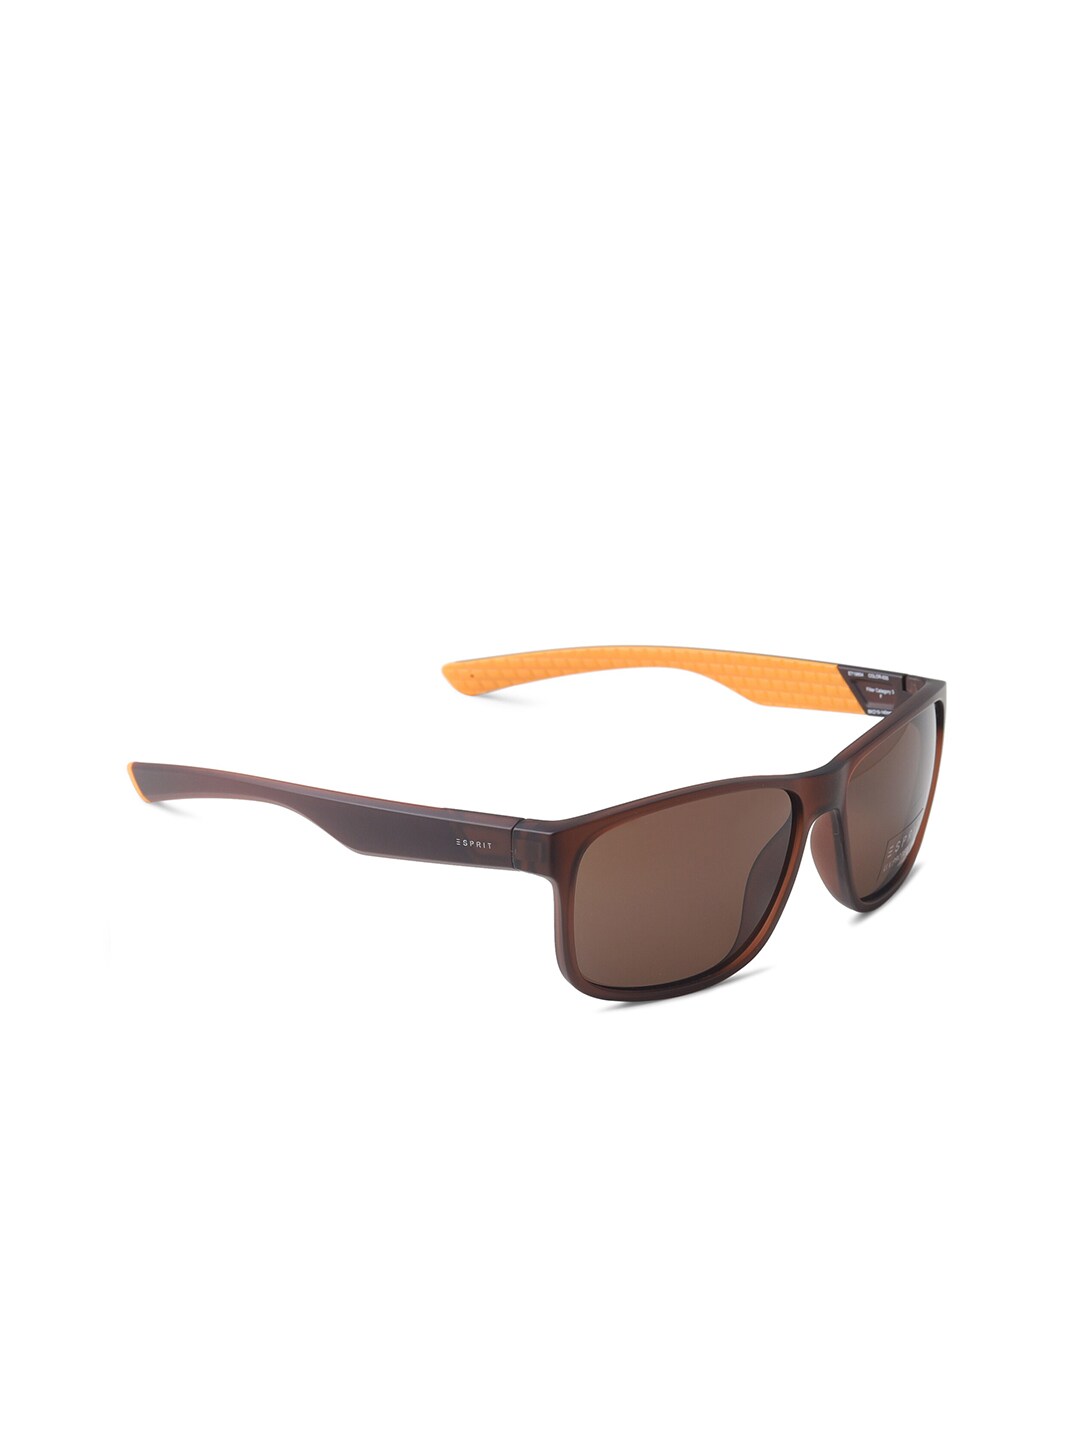 ESPRIT Unisex Brown Square Sunglasses with UV Protected Lens ET19654 Price in India